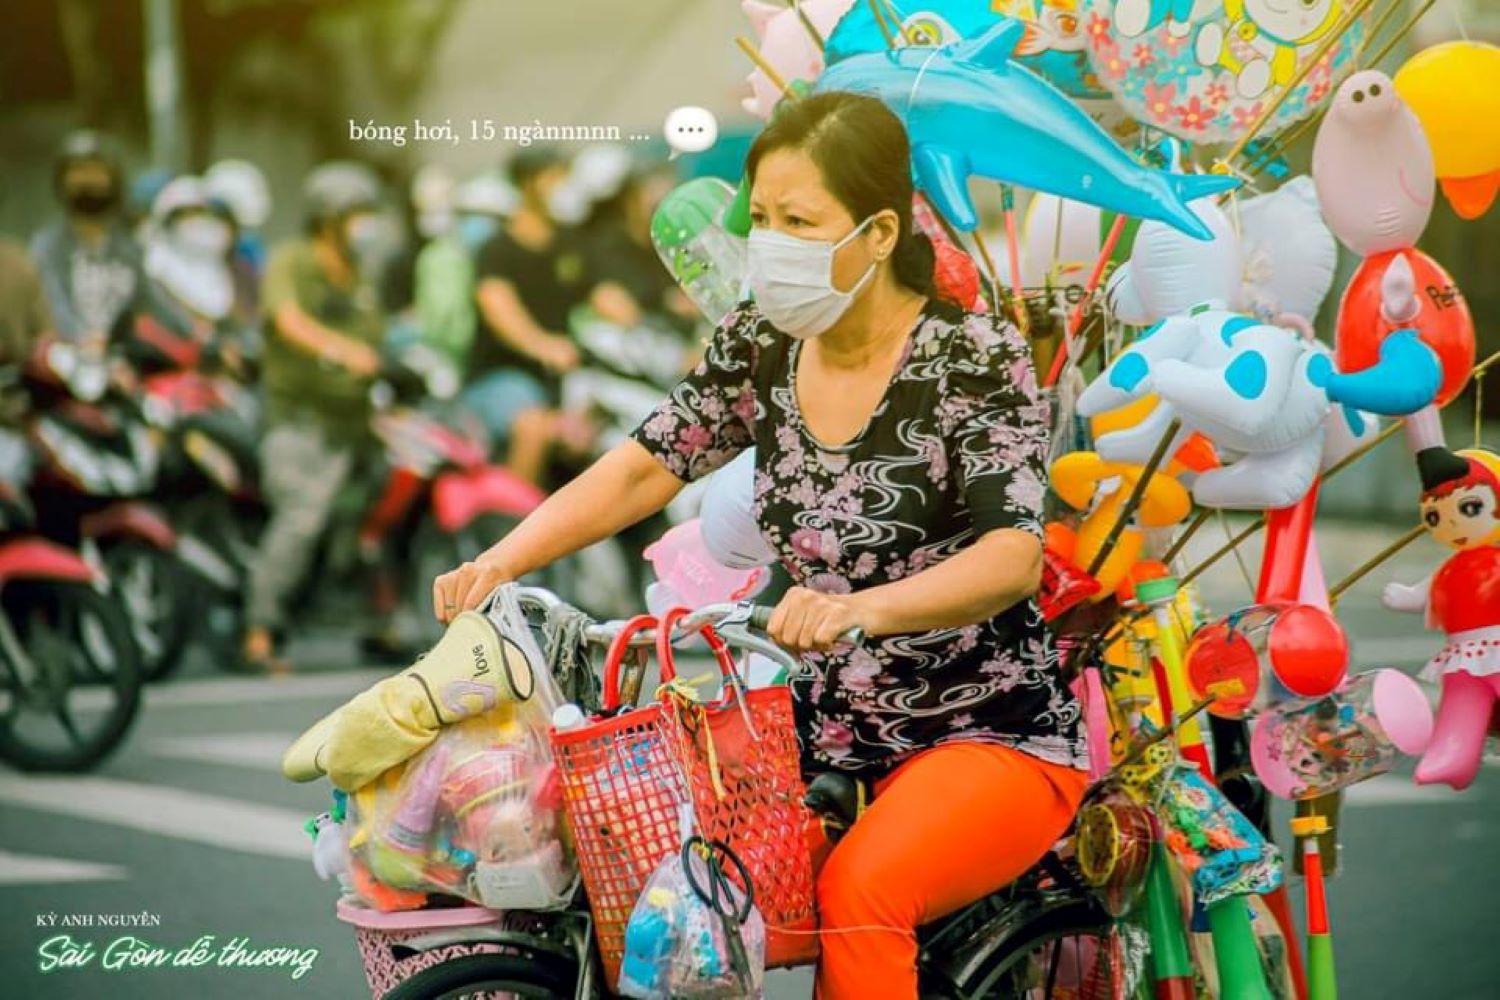 Bộ ảnh Sài Gòn dễ thương trong những ngày \'bình thường mới\'